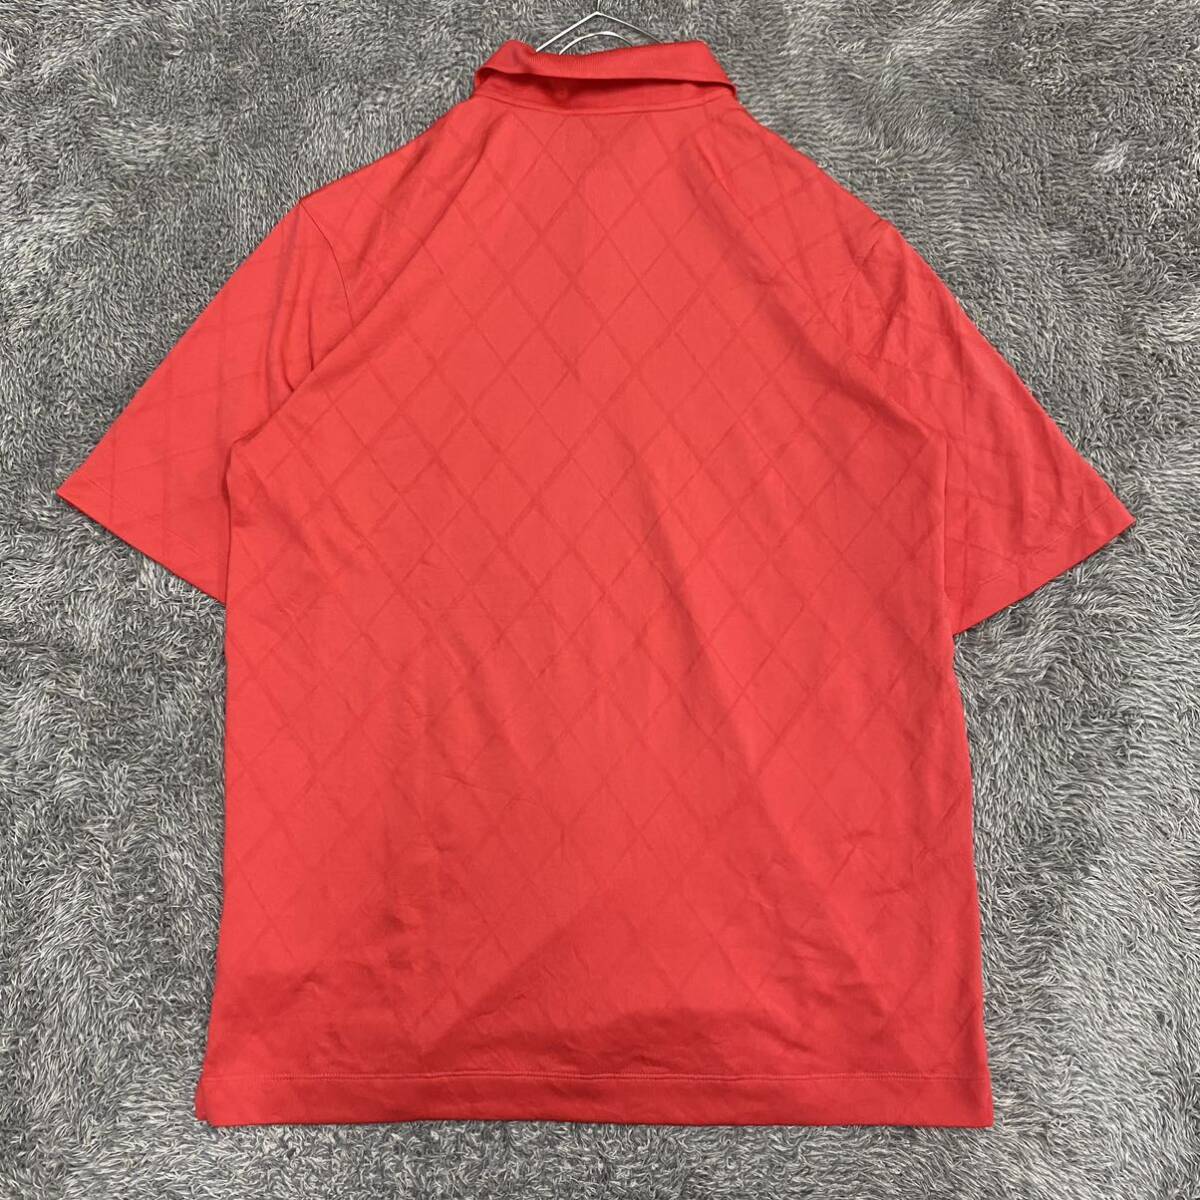 NIKE GOLF Nike Golf рубашка-поло рубашка с коротким рукавом размер L красный красный мужской tops нет максимальной ставки (R21)